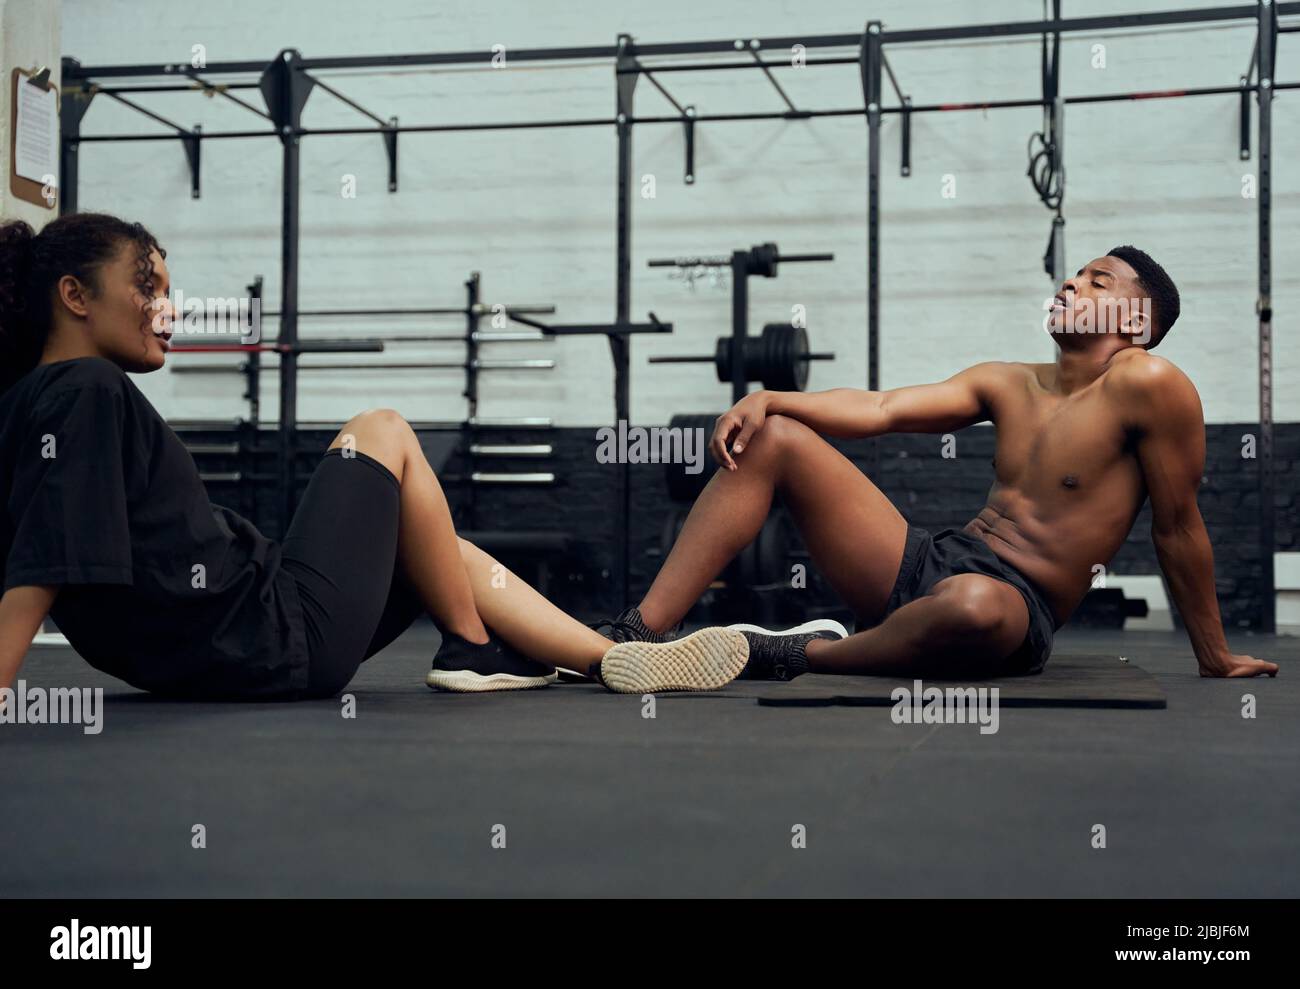 Amis de course mixtes en forme de croix dans la salle de sport. Afro-américain homme et femme se reposant sur le sol après l'exercice. Photo de haute qualité Banque D'Images